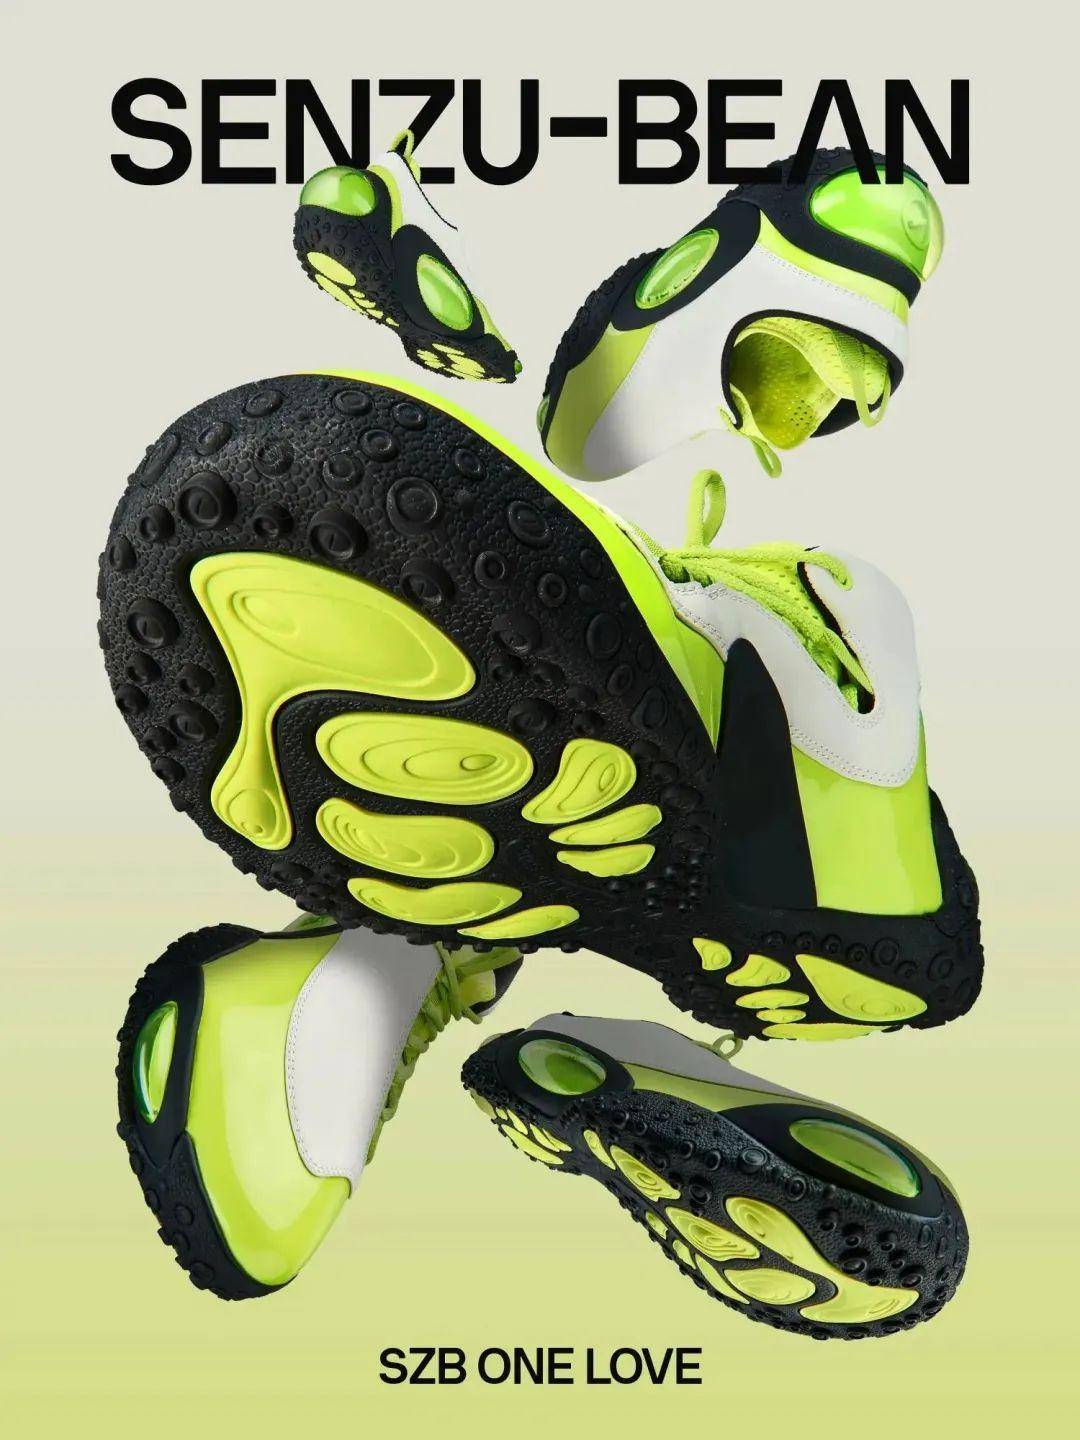 曹芳篮球鞋品牌图片